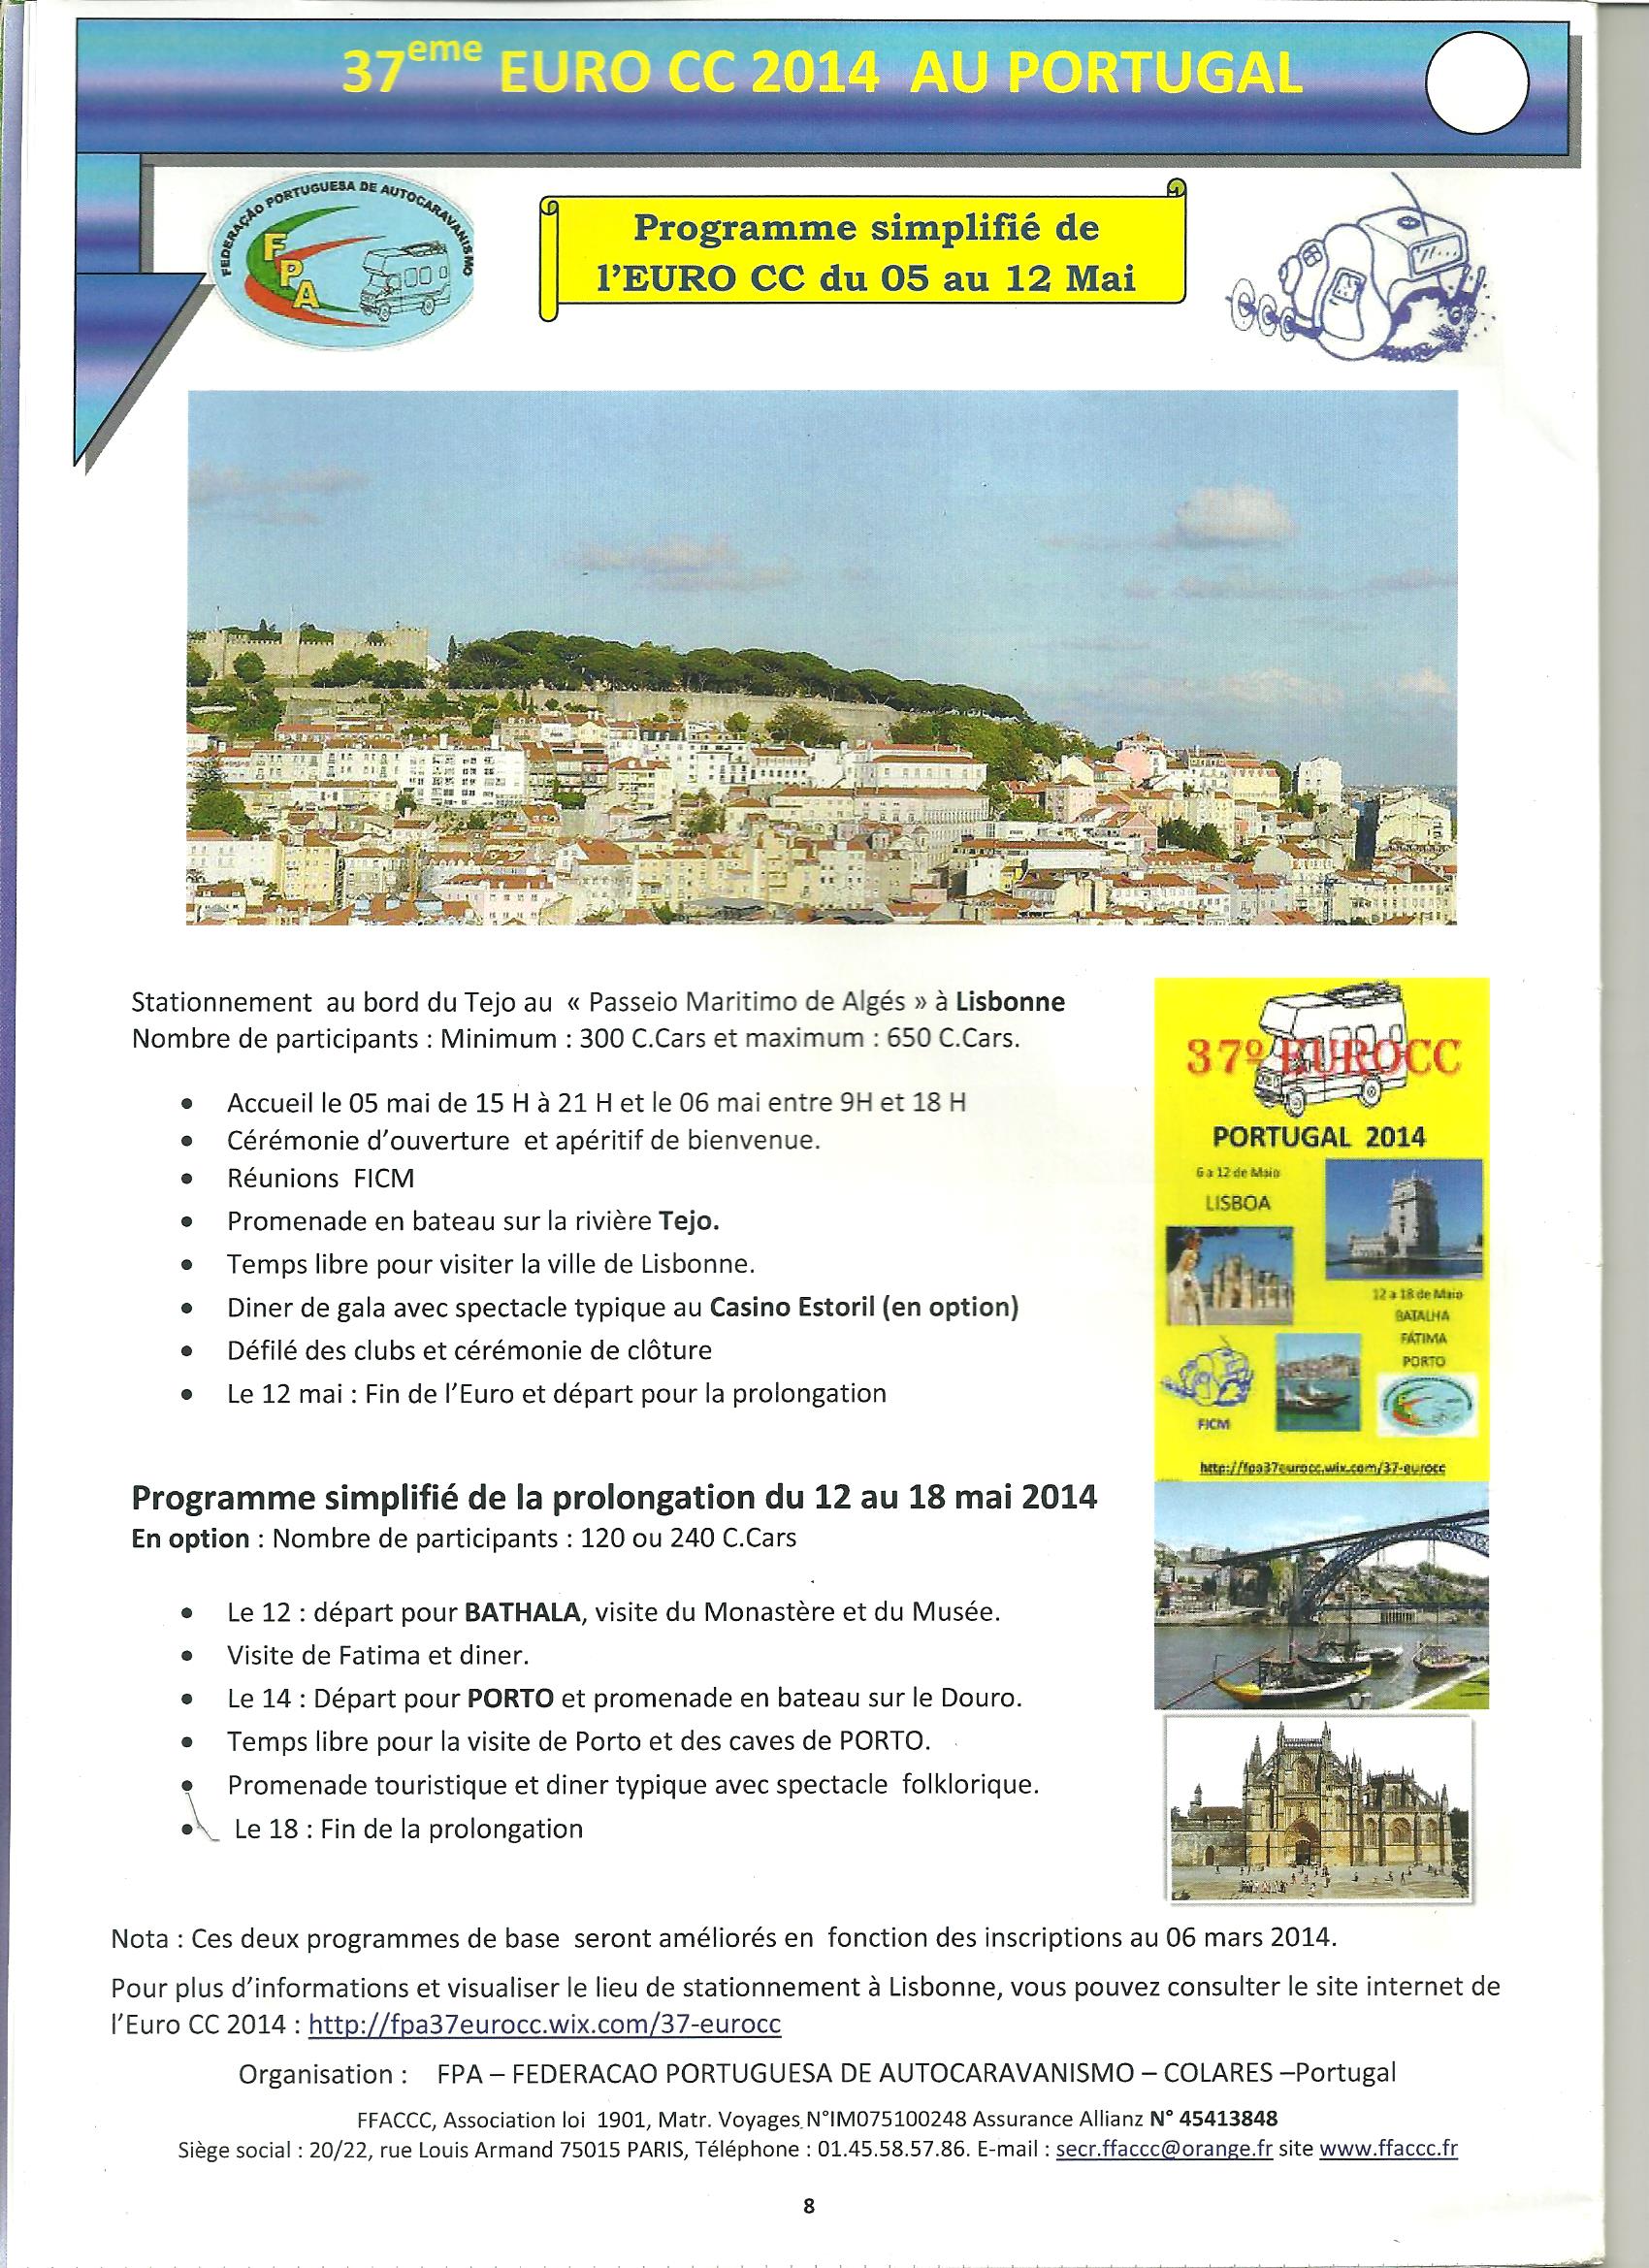 37 Lisboa Portugal 2014 Programa